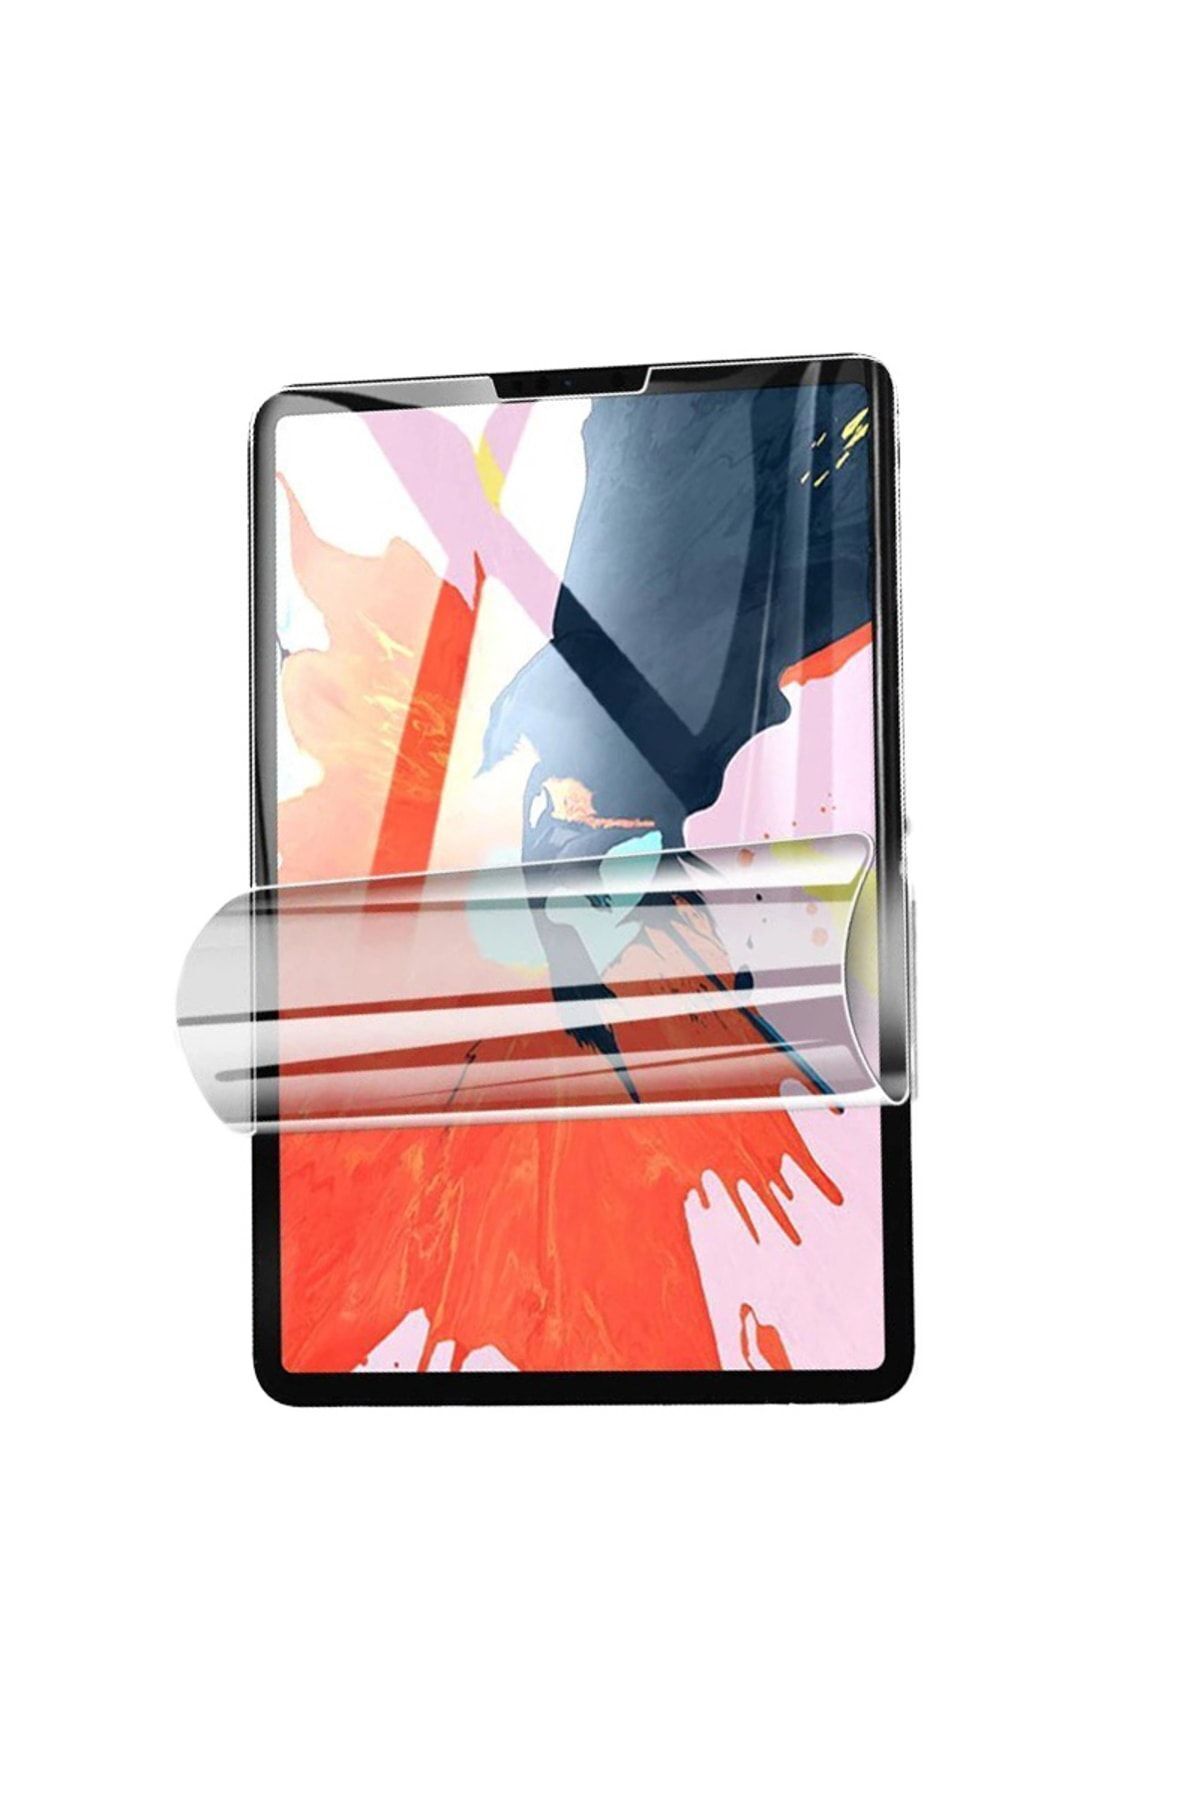 UnDePlus İpad Air 5/4 10.9" Uyumlu Tablet Nano Ekran Koruyucu (10.NESİL DEĞİLDİR)